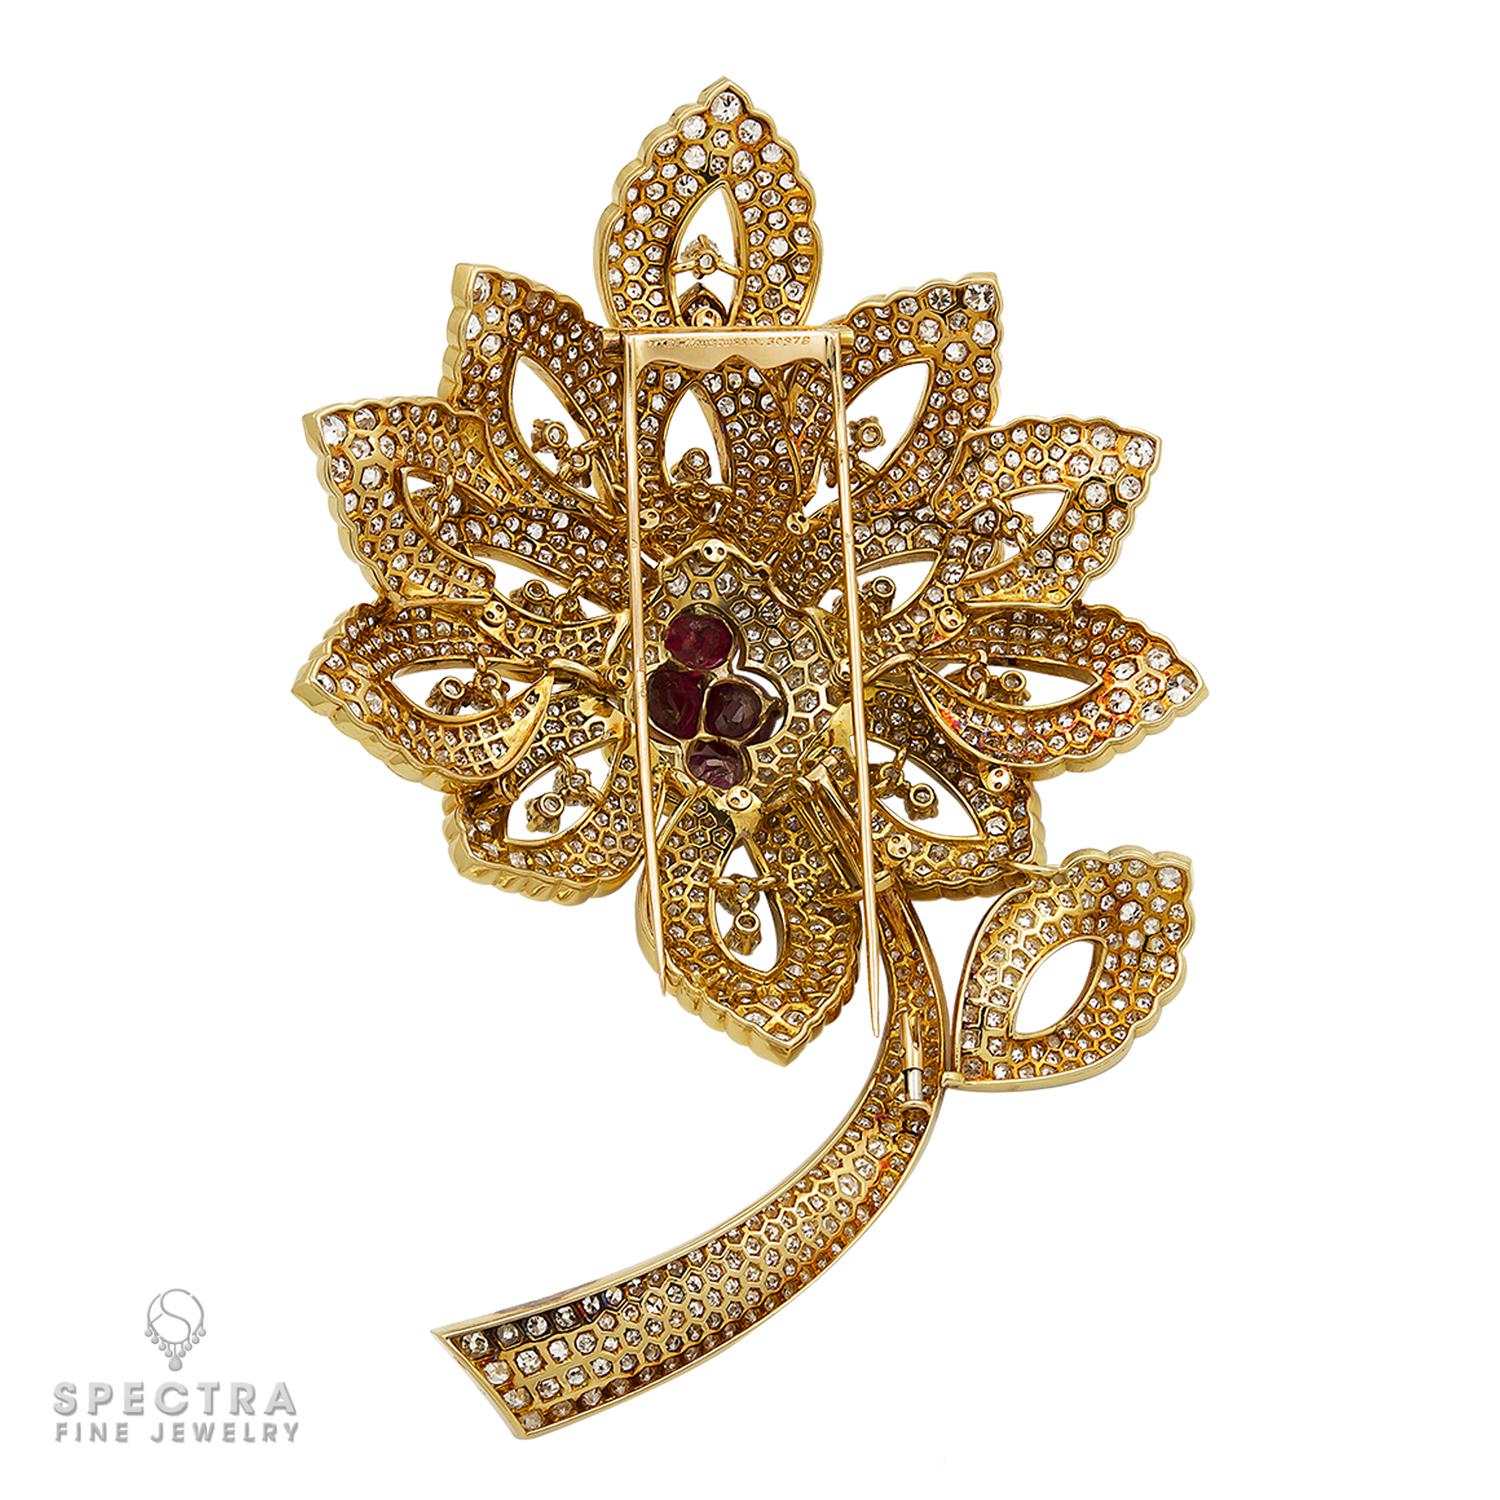 La broche fleur diamant rubis, signée par Mauboussin, est un bijou exquis qui met en valeur le savoir-faire et le souci du détail de la marque. Cette broche est un véritable chef-d'œuvre, alliant la beauté intemporelle des diamants et des rubis à